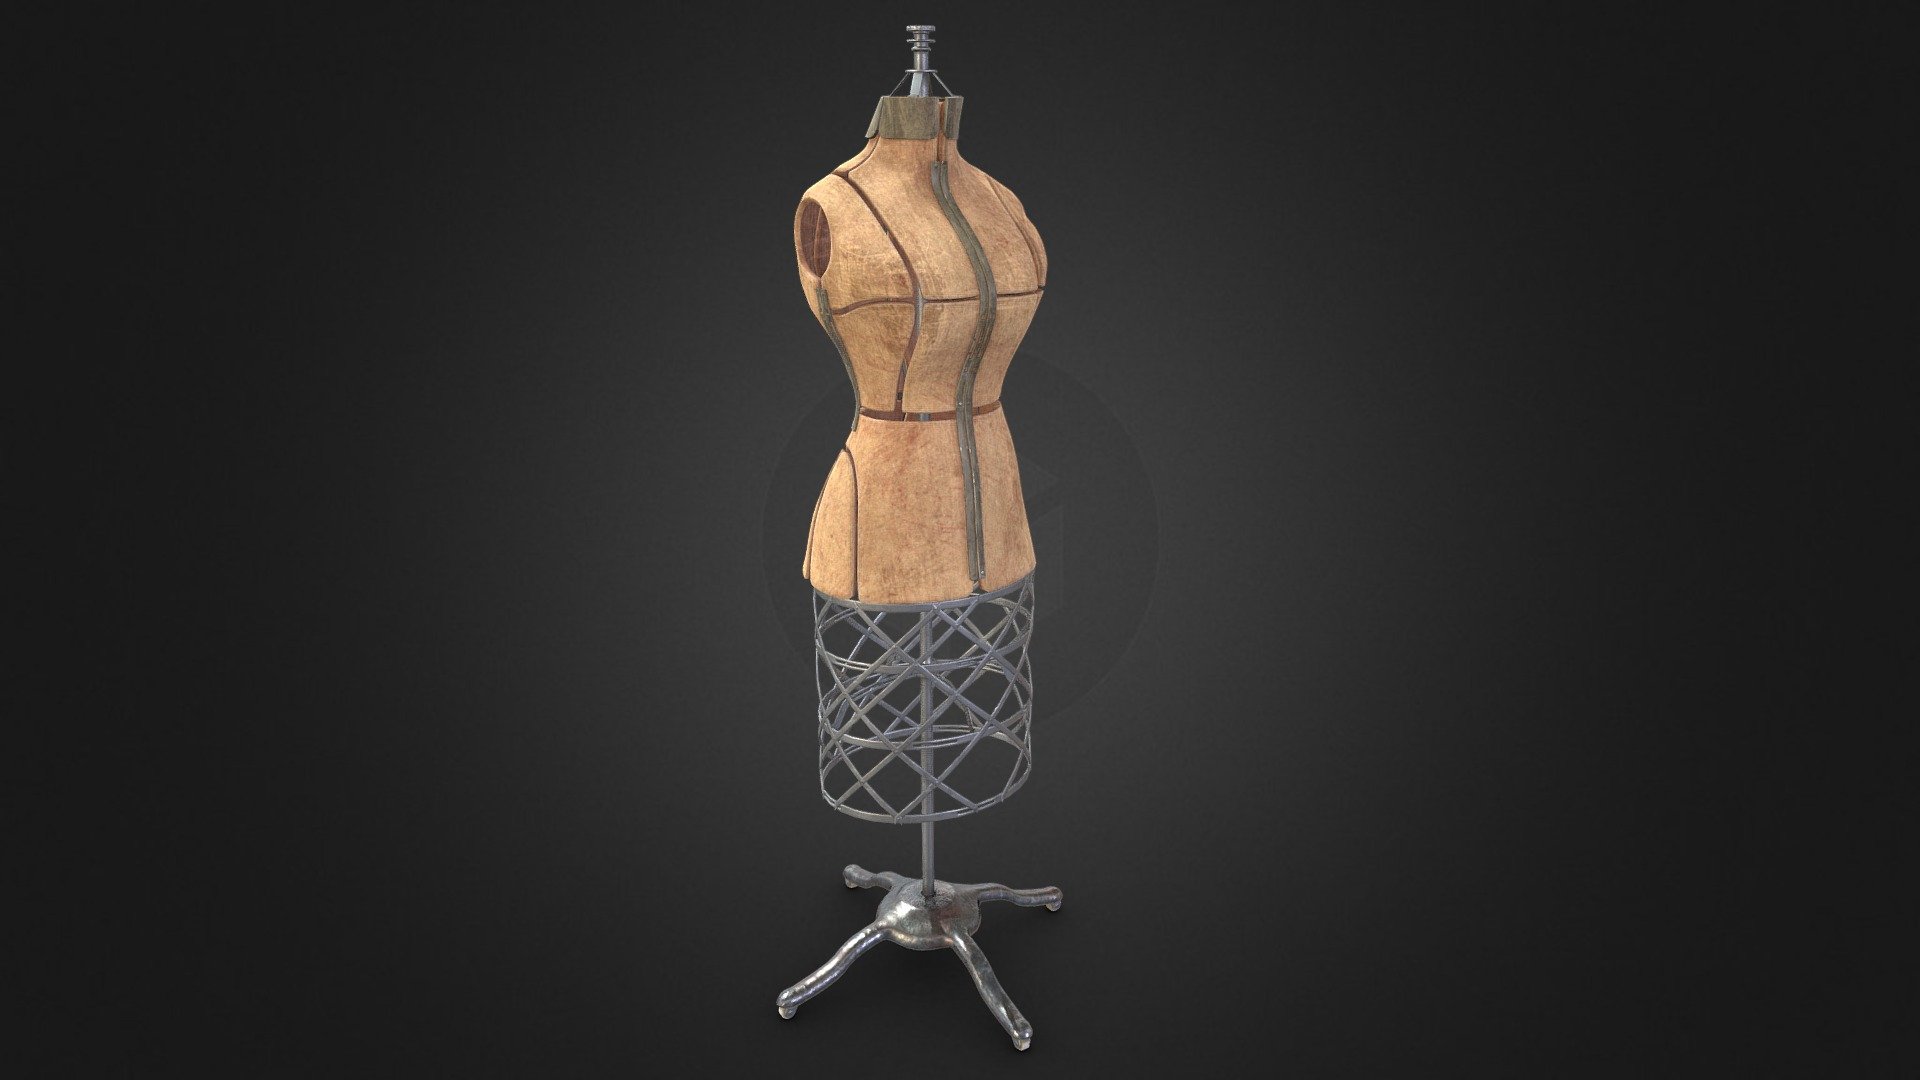 Game ready - Sewing Mannequin - Buy Royalty Free 3D model by Aaron Winnenberg (@winnenbergaaron) 3d model